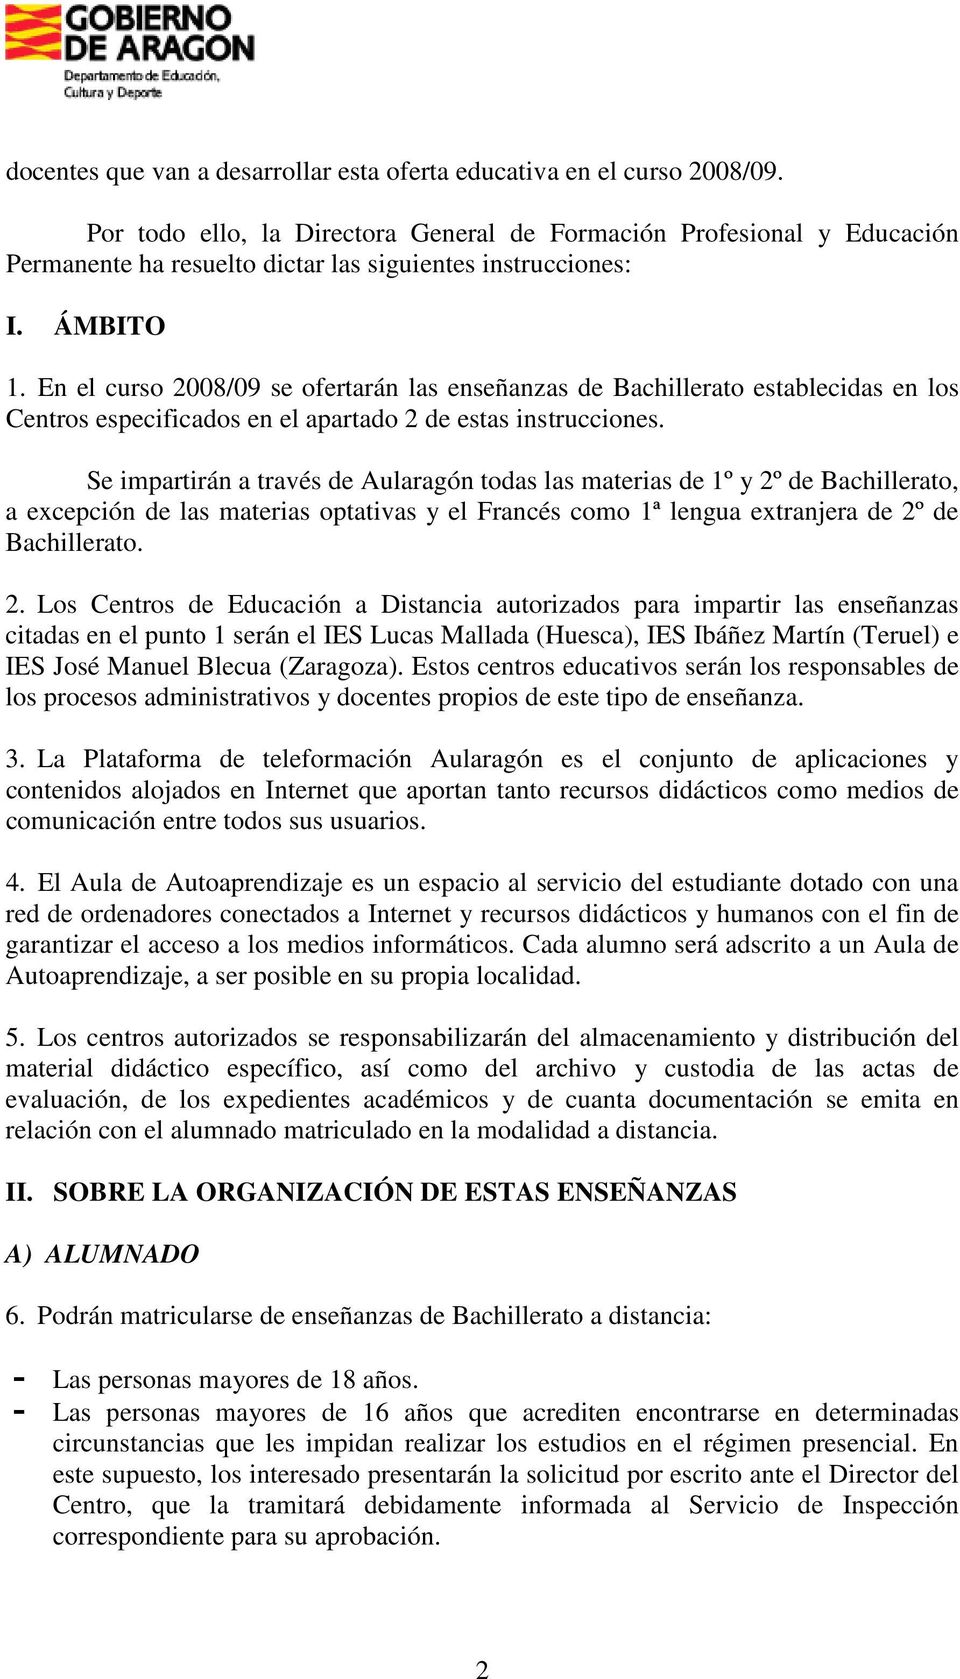 En el curso 2008/09 se ofertarán las enseñanzas de Bachillerato establecidas en los Centros especificados en el apartado 2 de estas instrucciones.